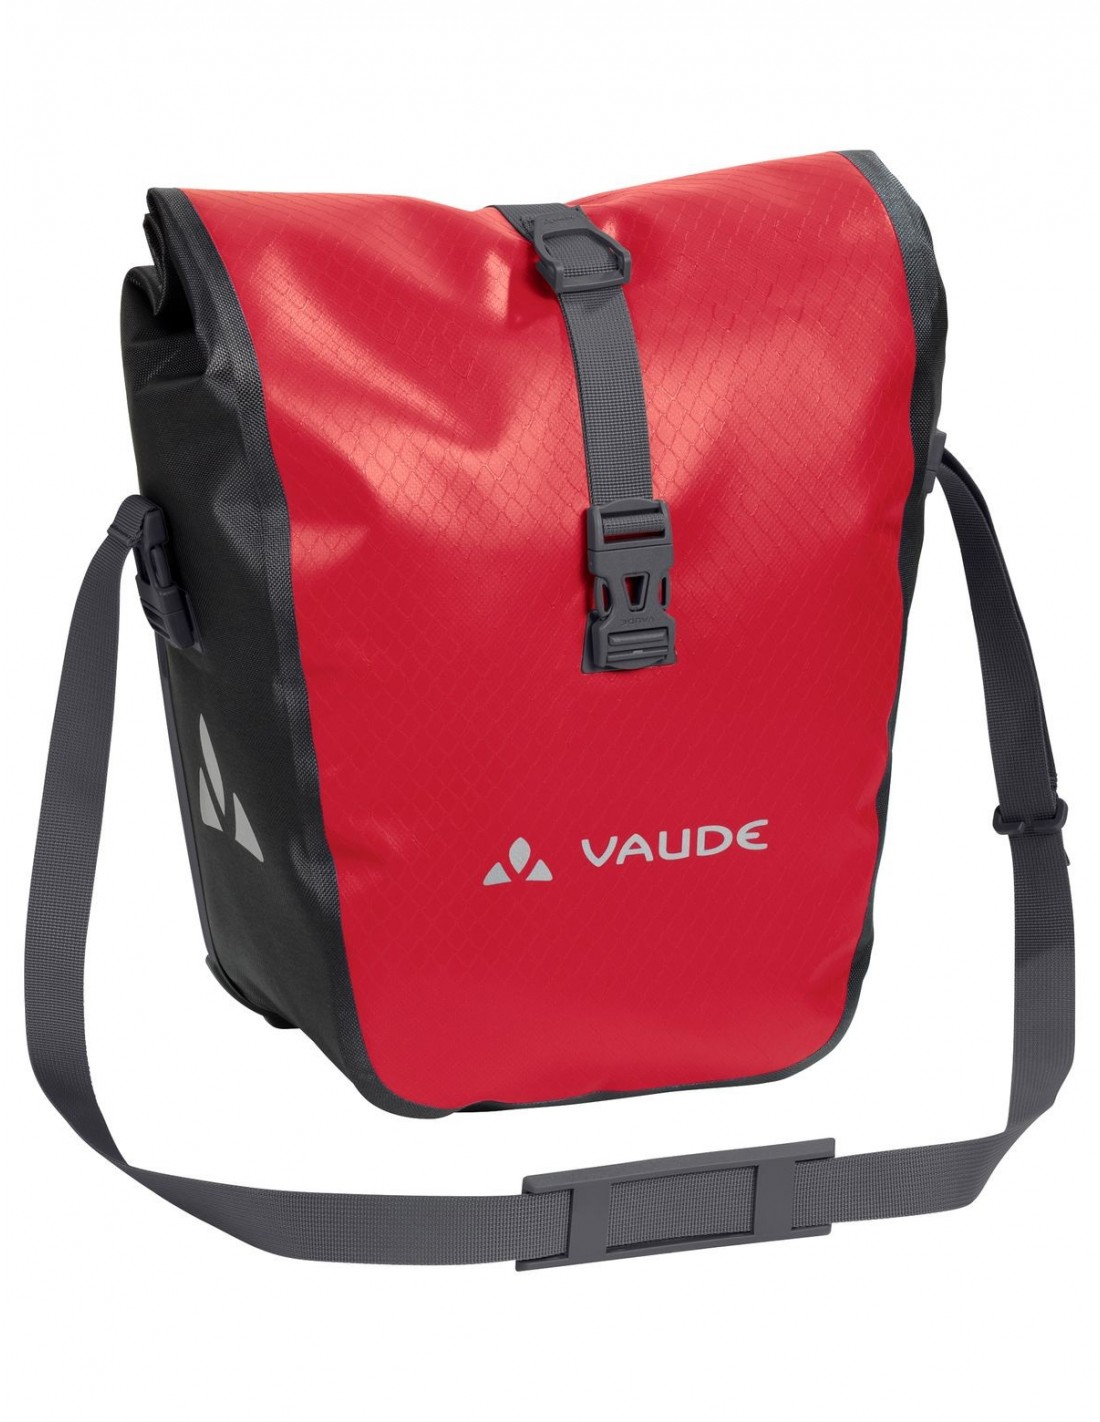 Vaude Aqua Front - Red Taschenvariante - Gepäckträgertaschen, von Vaude